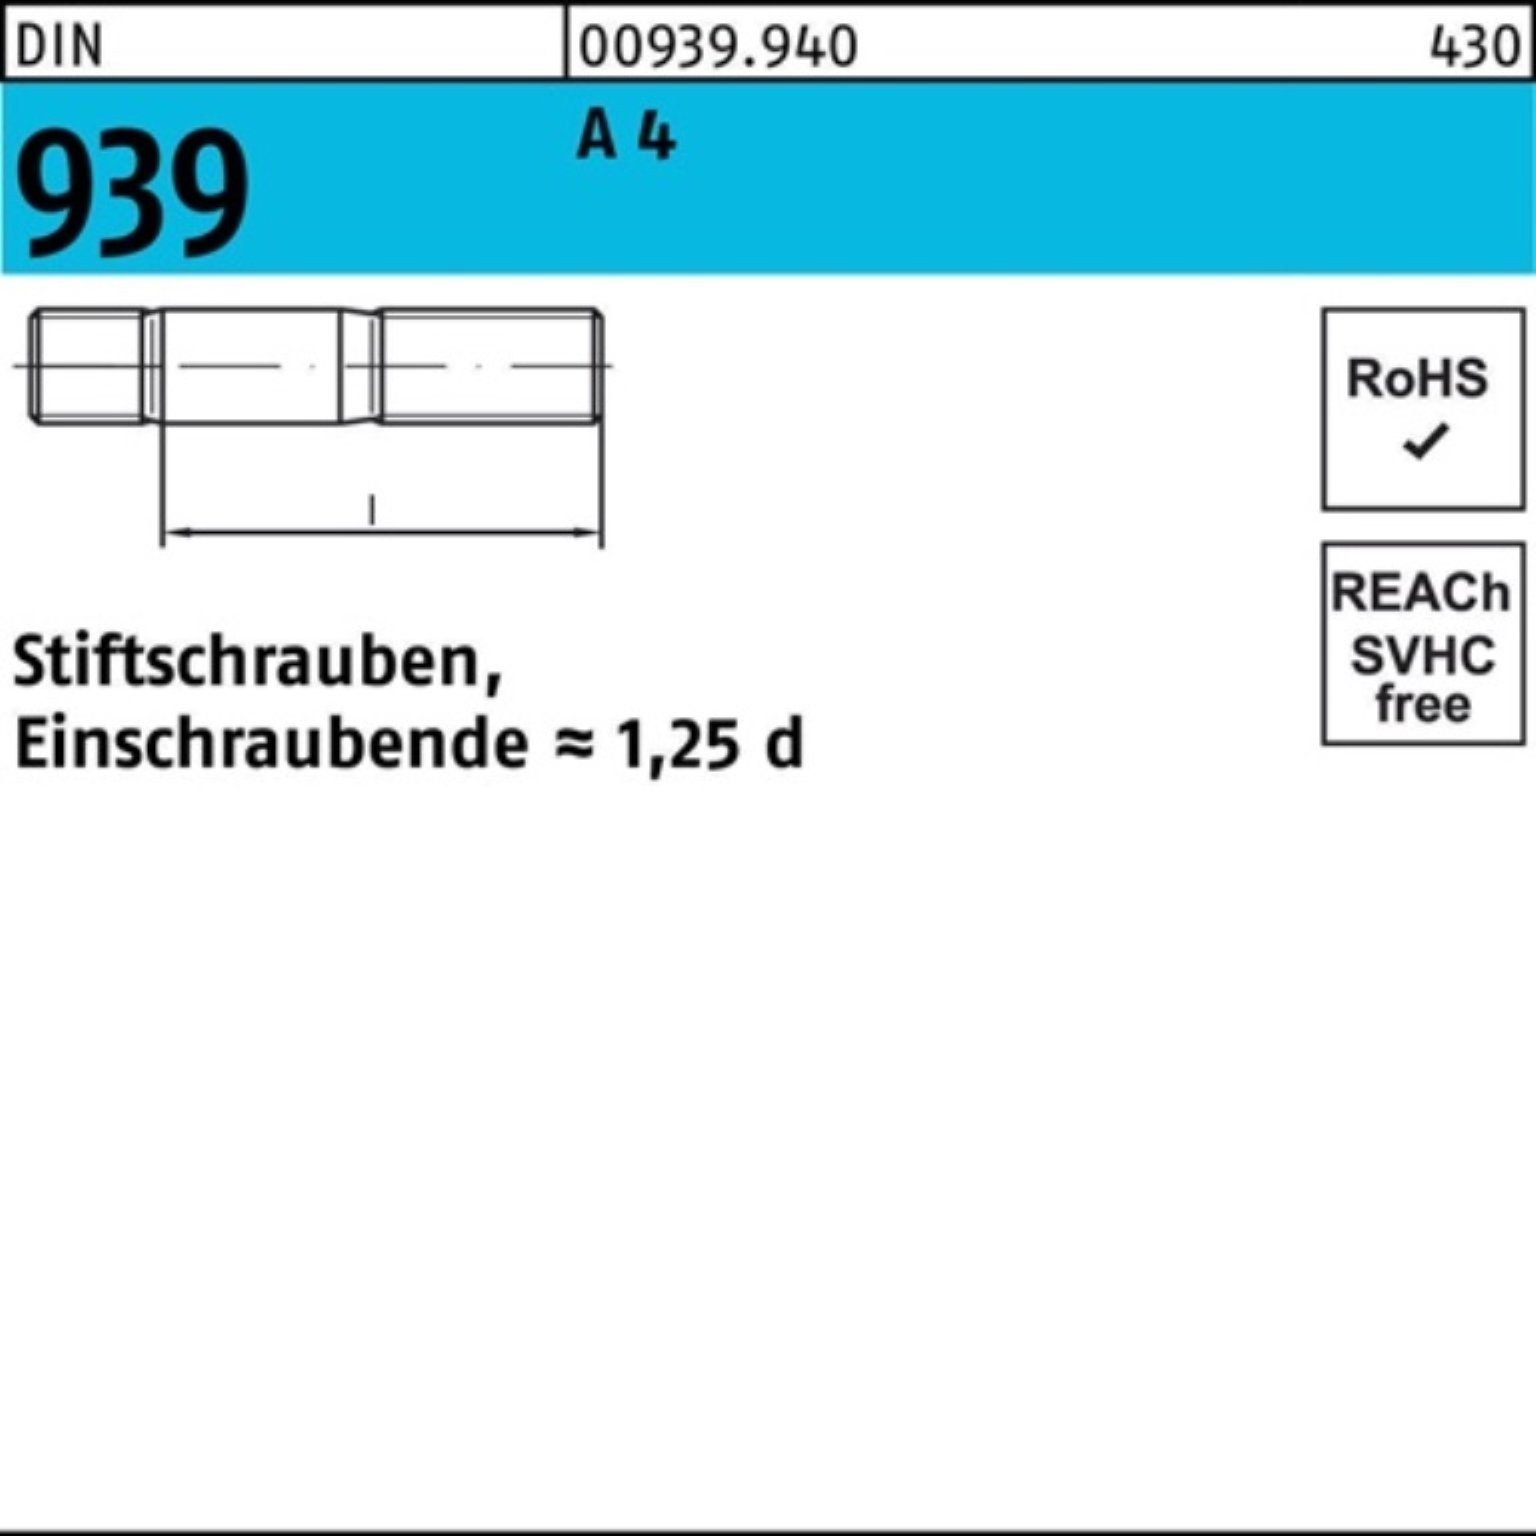 St 55 100er Stiftschraube Reyher 939 Einschraubende=1,25d 1 A Stiftschraube DIN Pack M24x 4